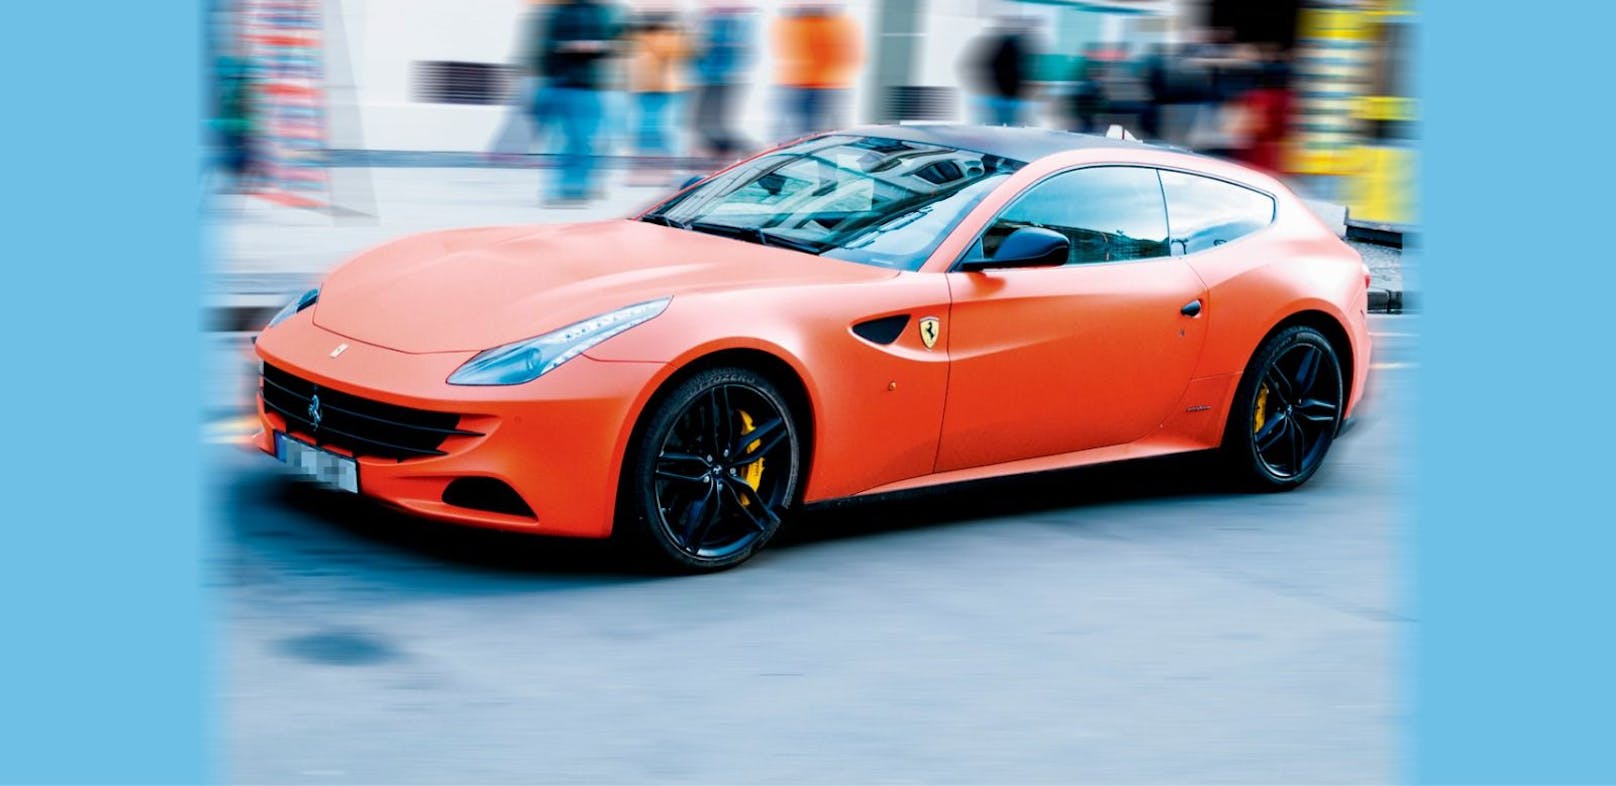 Der Lenker eines orangenen Ferrari wird von der Polizei gesucht. (Symbolfoto)